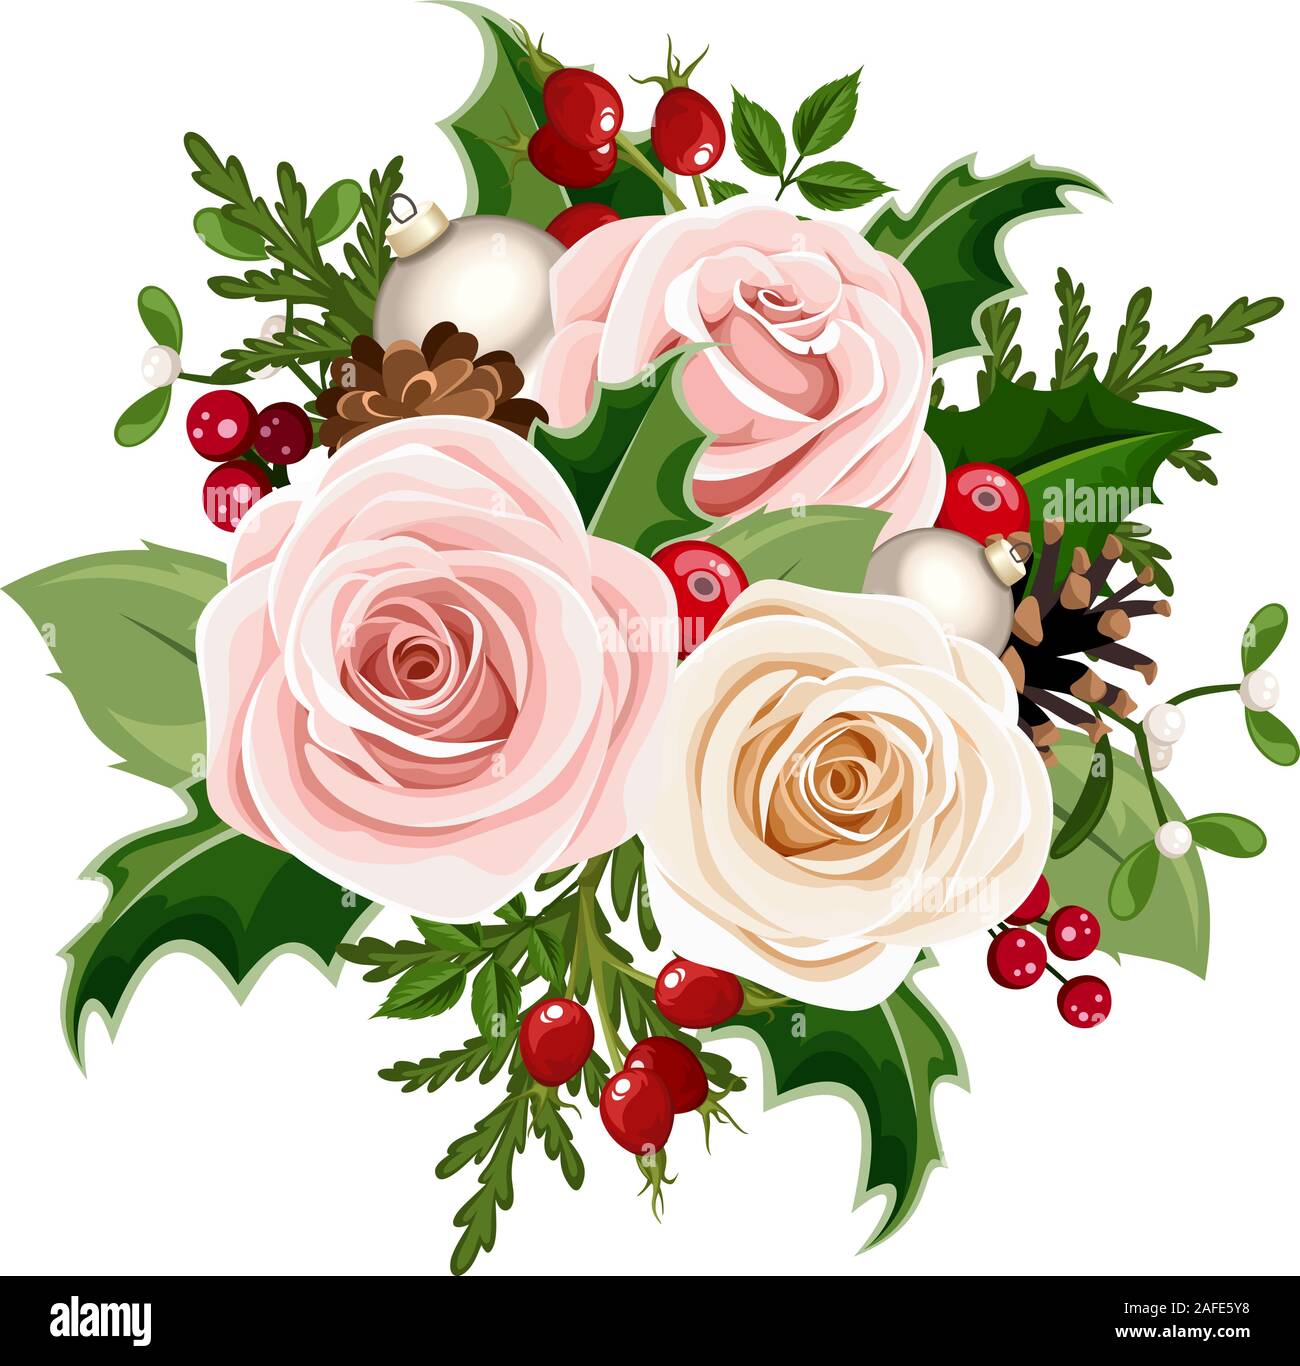 Bouquet de Noël vectoriel avec roses roses et blanches, boules, baies rosehip, houx, branches de sapin et cônes isolés sur fond blanc. Illustration de Vecteur